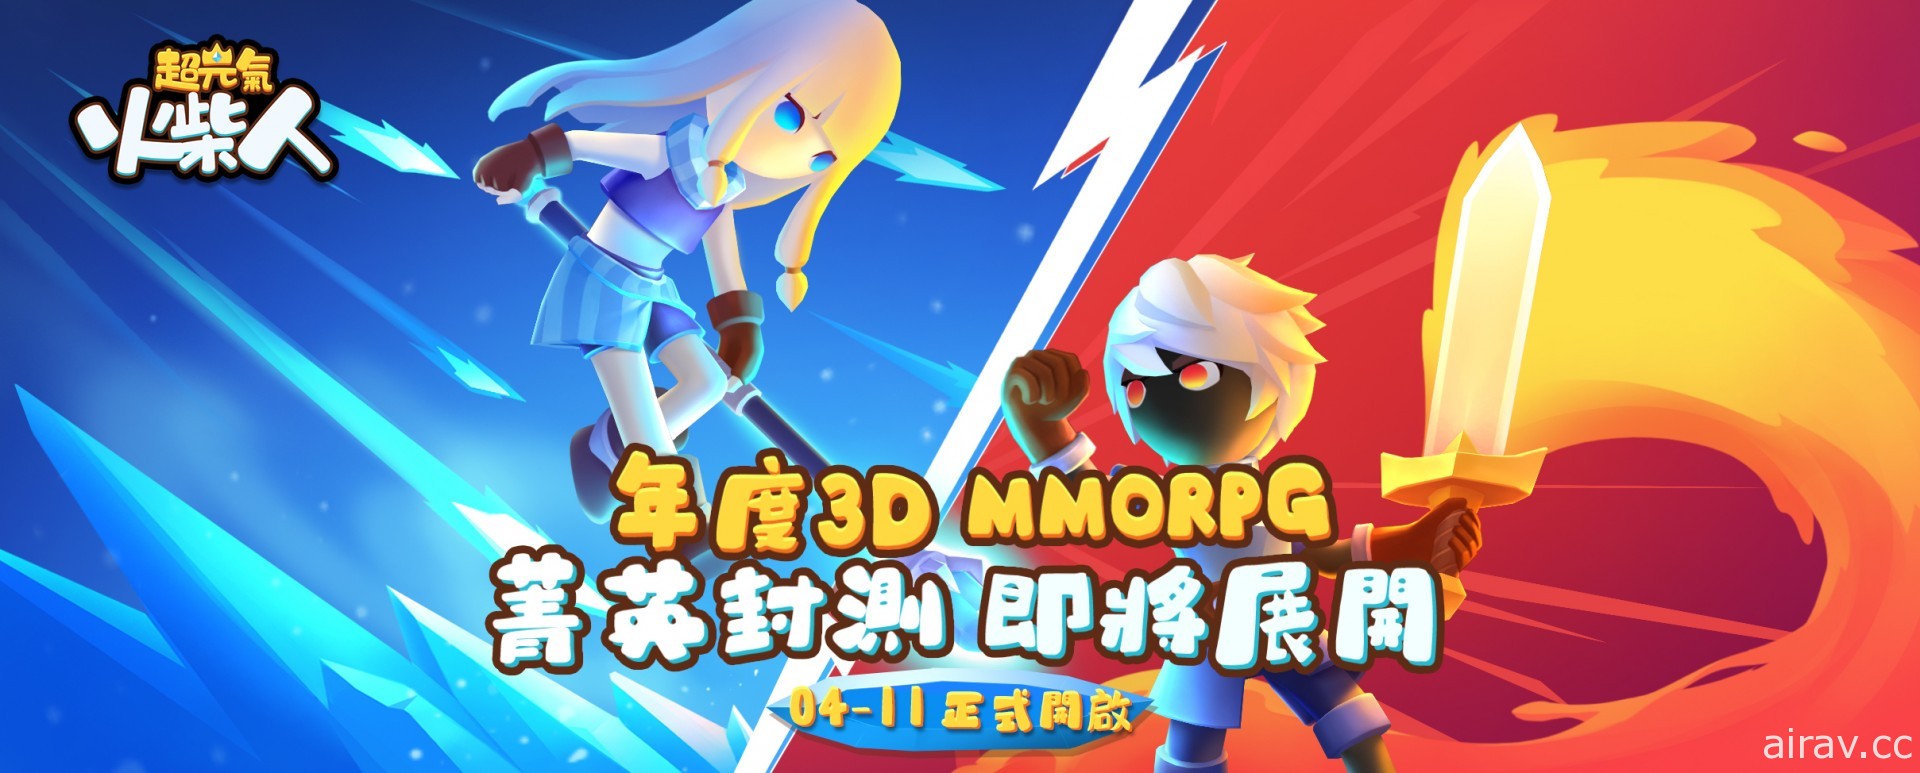 3D MMORPG《超元氣火柴人》開啟 7 日菁英封測